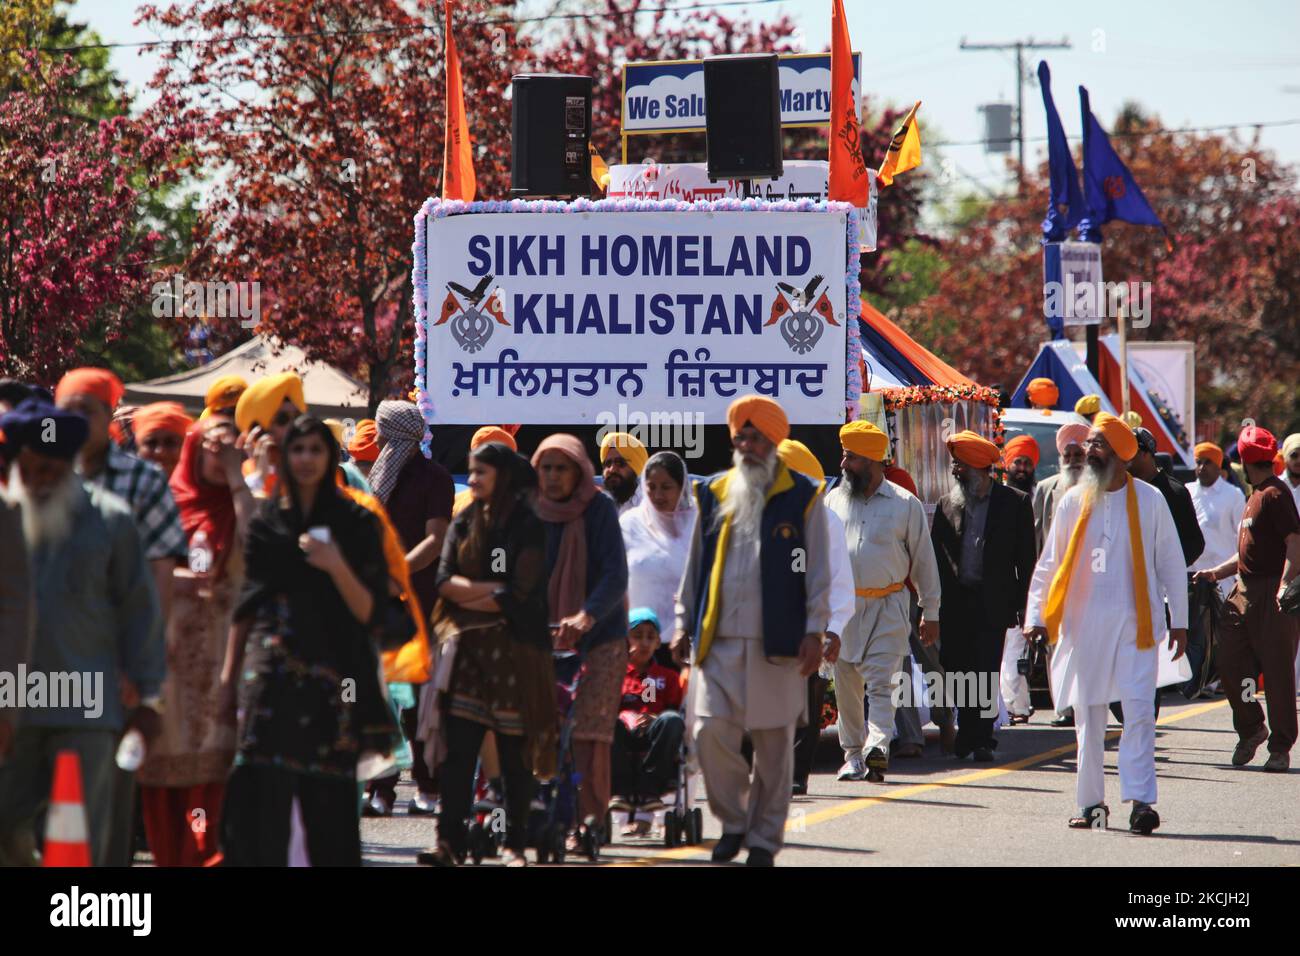 Die kanadische Pro-Khalistan-Sikhs protestieren gegen die indische Regierung und fordern am 06. Mai 2012 einen separaten Sikh-Staat namens Khalistan in Malton, Ontario, Kanada. Tausende von Sikhs nahmen an einem Nagar Kirtan Teil, um Vaisakhi zu feiern und ihre Unzufriedenheit mit der indischen Regierung zu zeigen. Die Khalistan-Bewegung bezieht sich auf eine Bewegung, die versucht, einen separaten Sikh-Staat zu schaffen, genannt Khalistan in der Punjab-Region Indiens. Die territoriale Definition der vorgeschlagenen Nation ist umstritten, wobei einige glauben, dass sie einfach aus dem indischen Bundesstaat Punjab herausgeschnitten werden sollte, wo Sikhs die Mehrheit der Popmusik sind Stockfoto